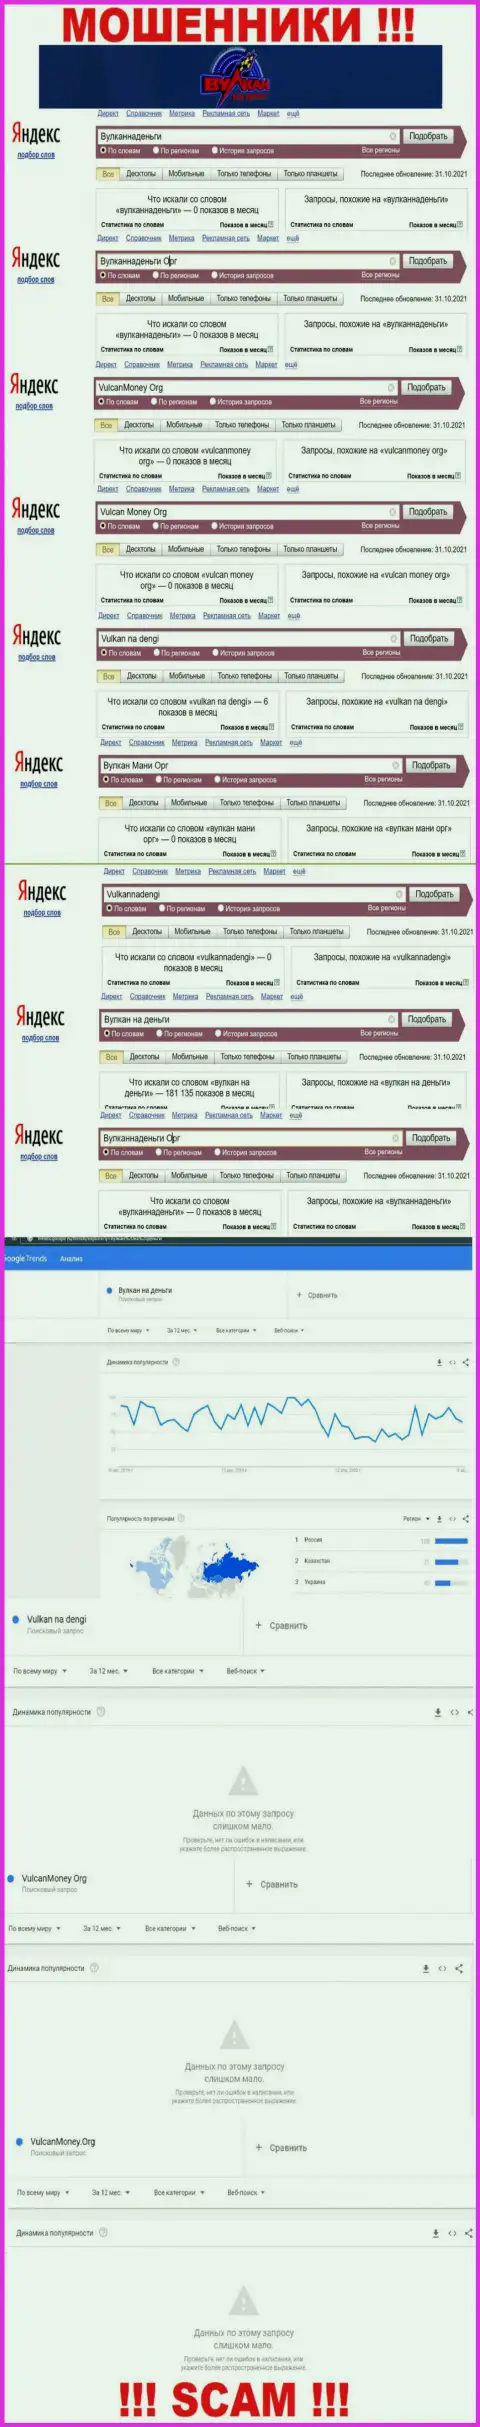 Подробный анализ суммарного числа запросов в поисковиках интернет сети по разводилам Vulkan na dengi